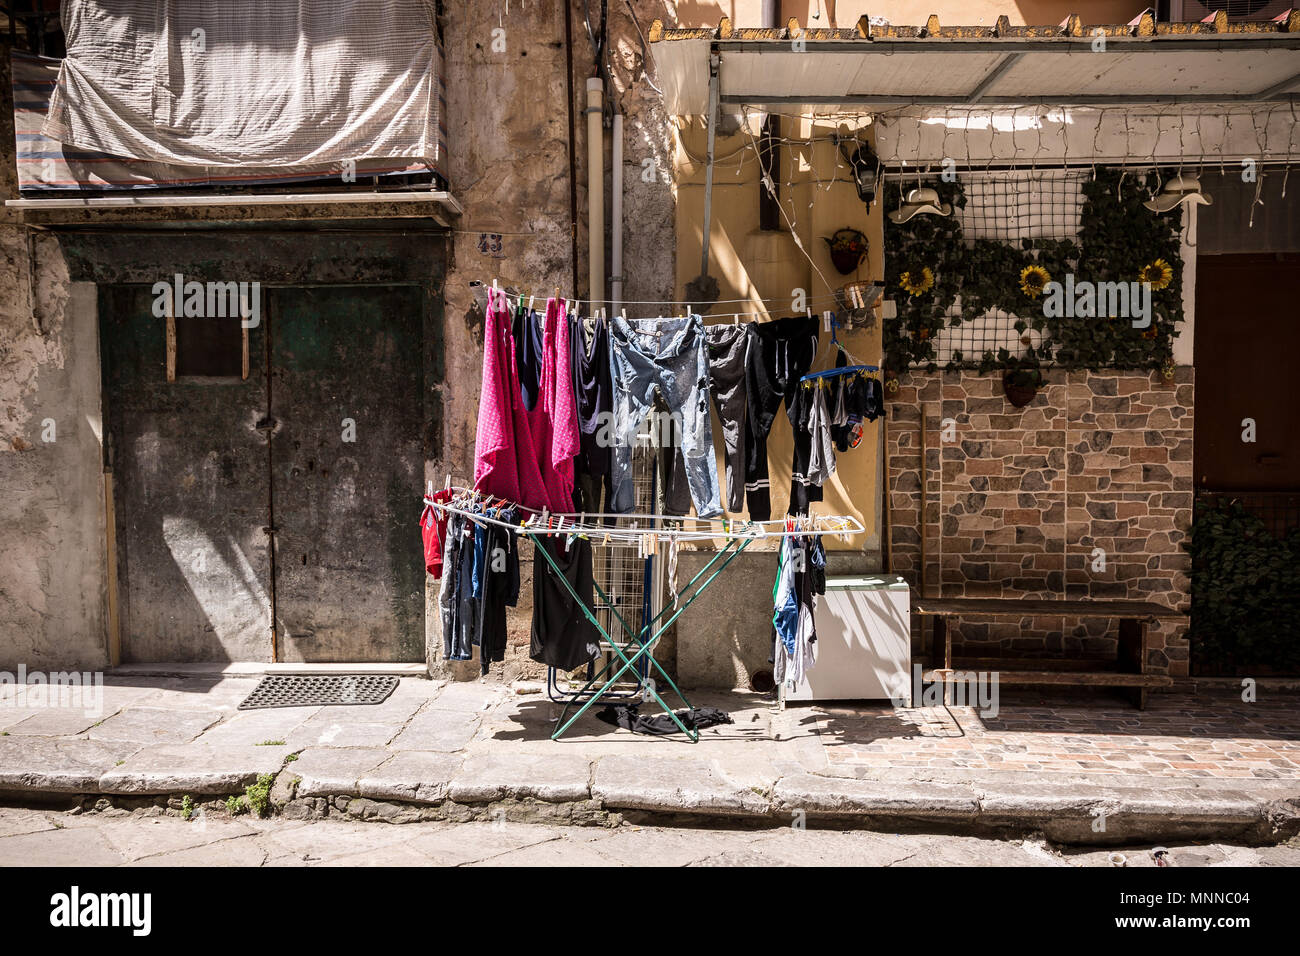 Le lavage est le séchage au soleil sur la rue de Sicile. Banque D'Images